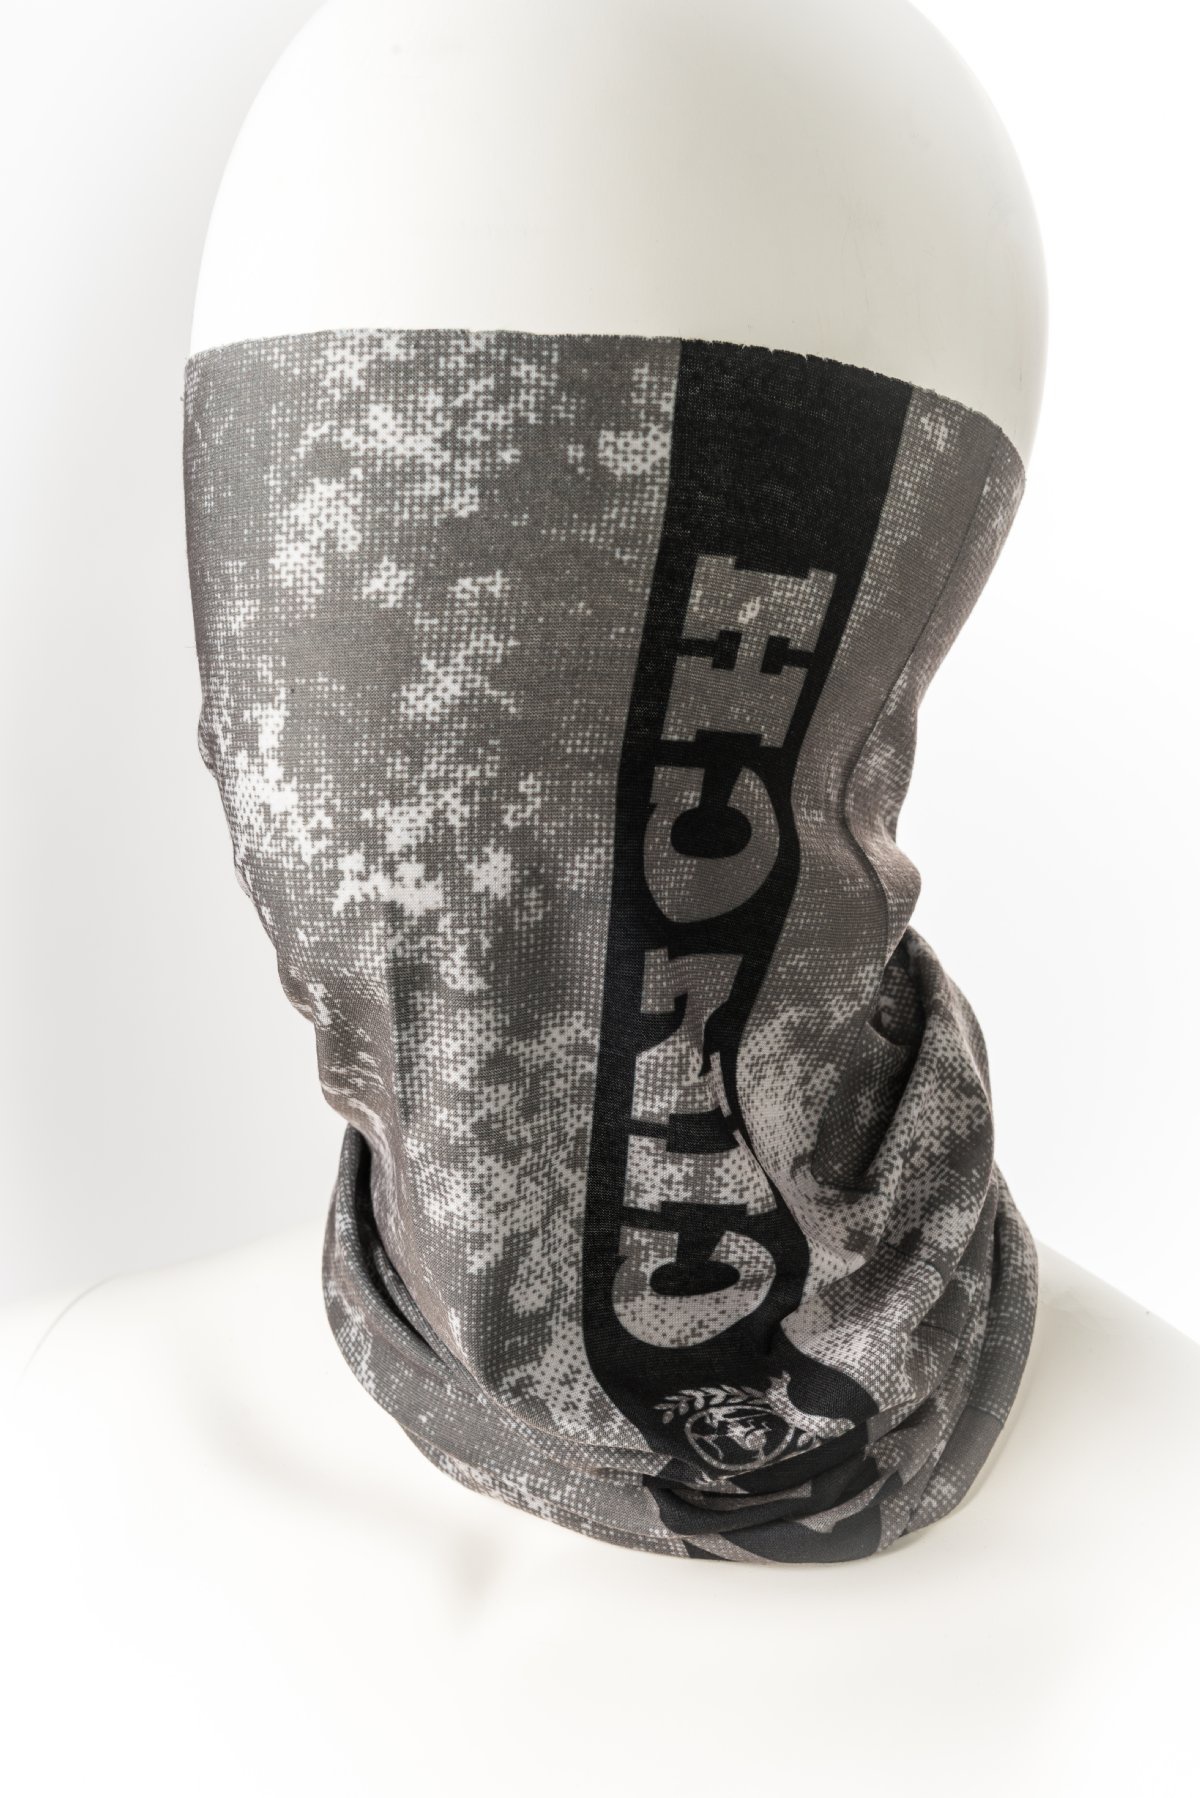 Cinch Neck Gaiter Grey Featuring ChillX Fabric MXX1999001 | Pakenham ...